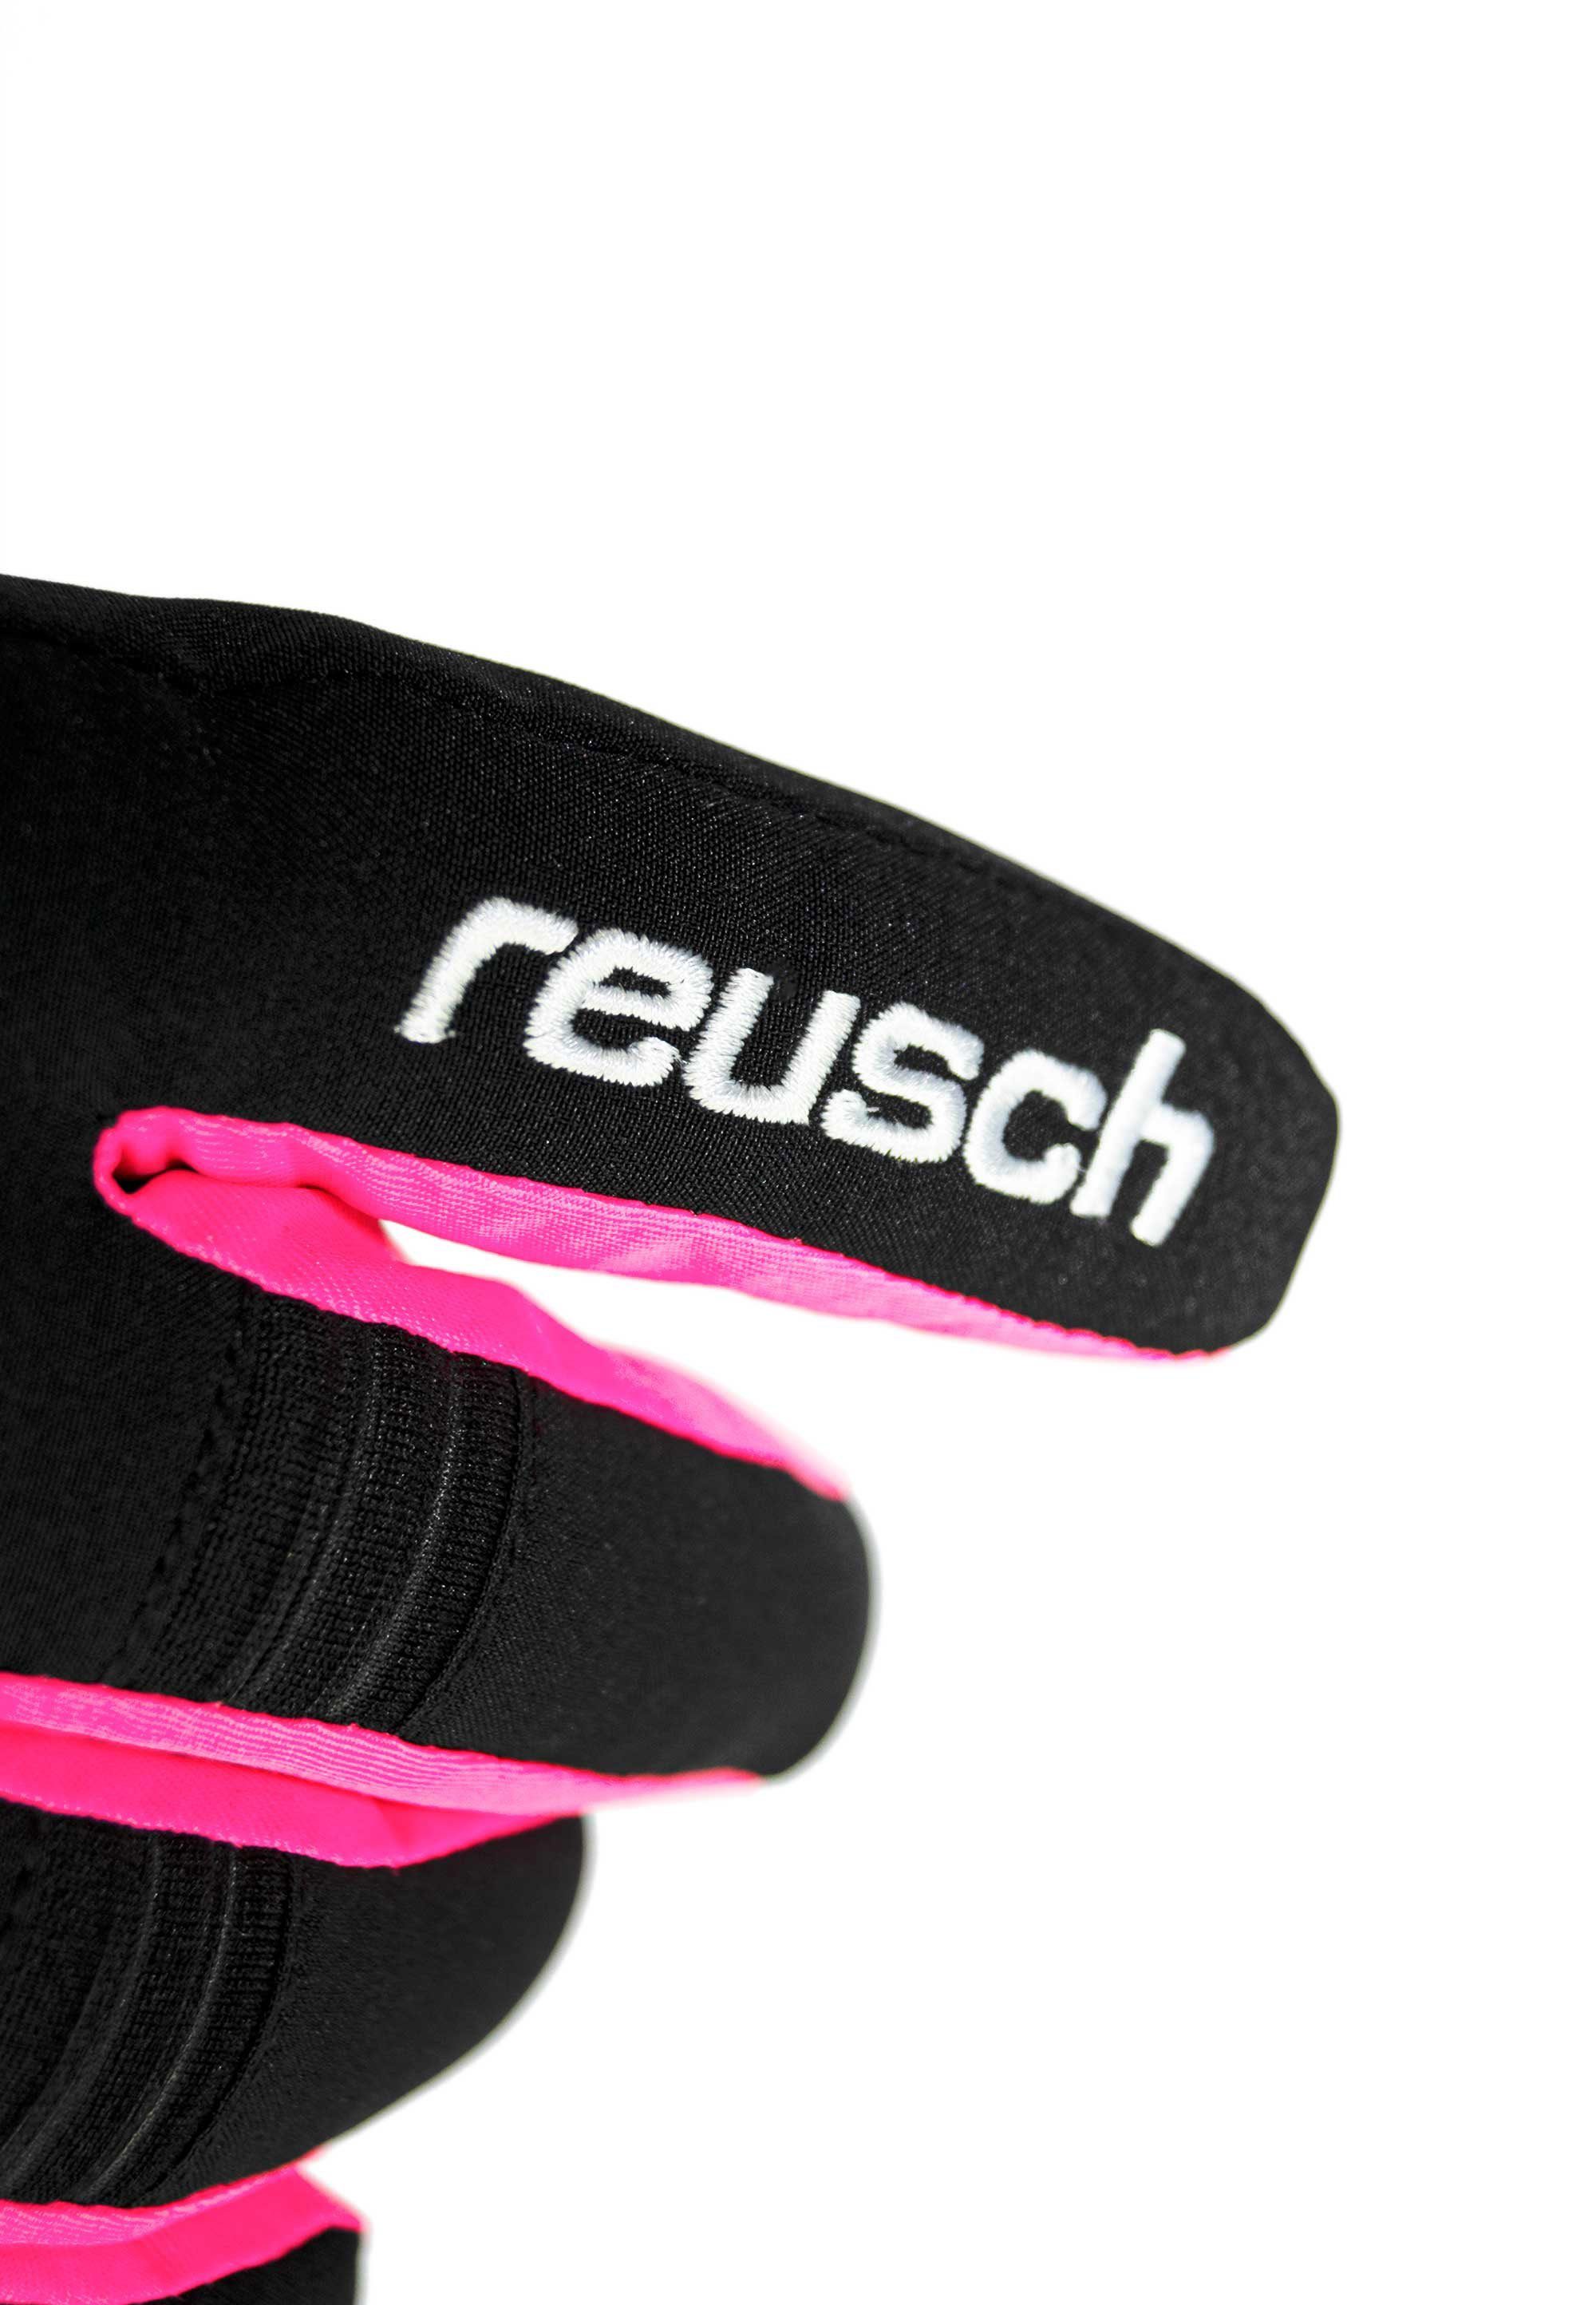 Reusch Skihandschuhe Kondor R-TEX® XT schwarz-pink Insert-Membran Junior atmungsaktiver mit